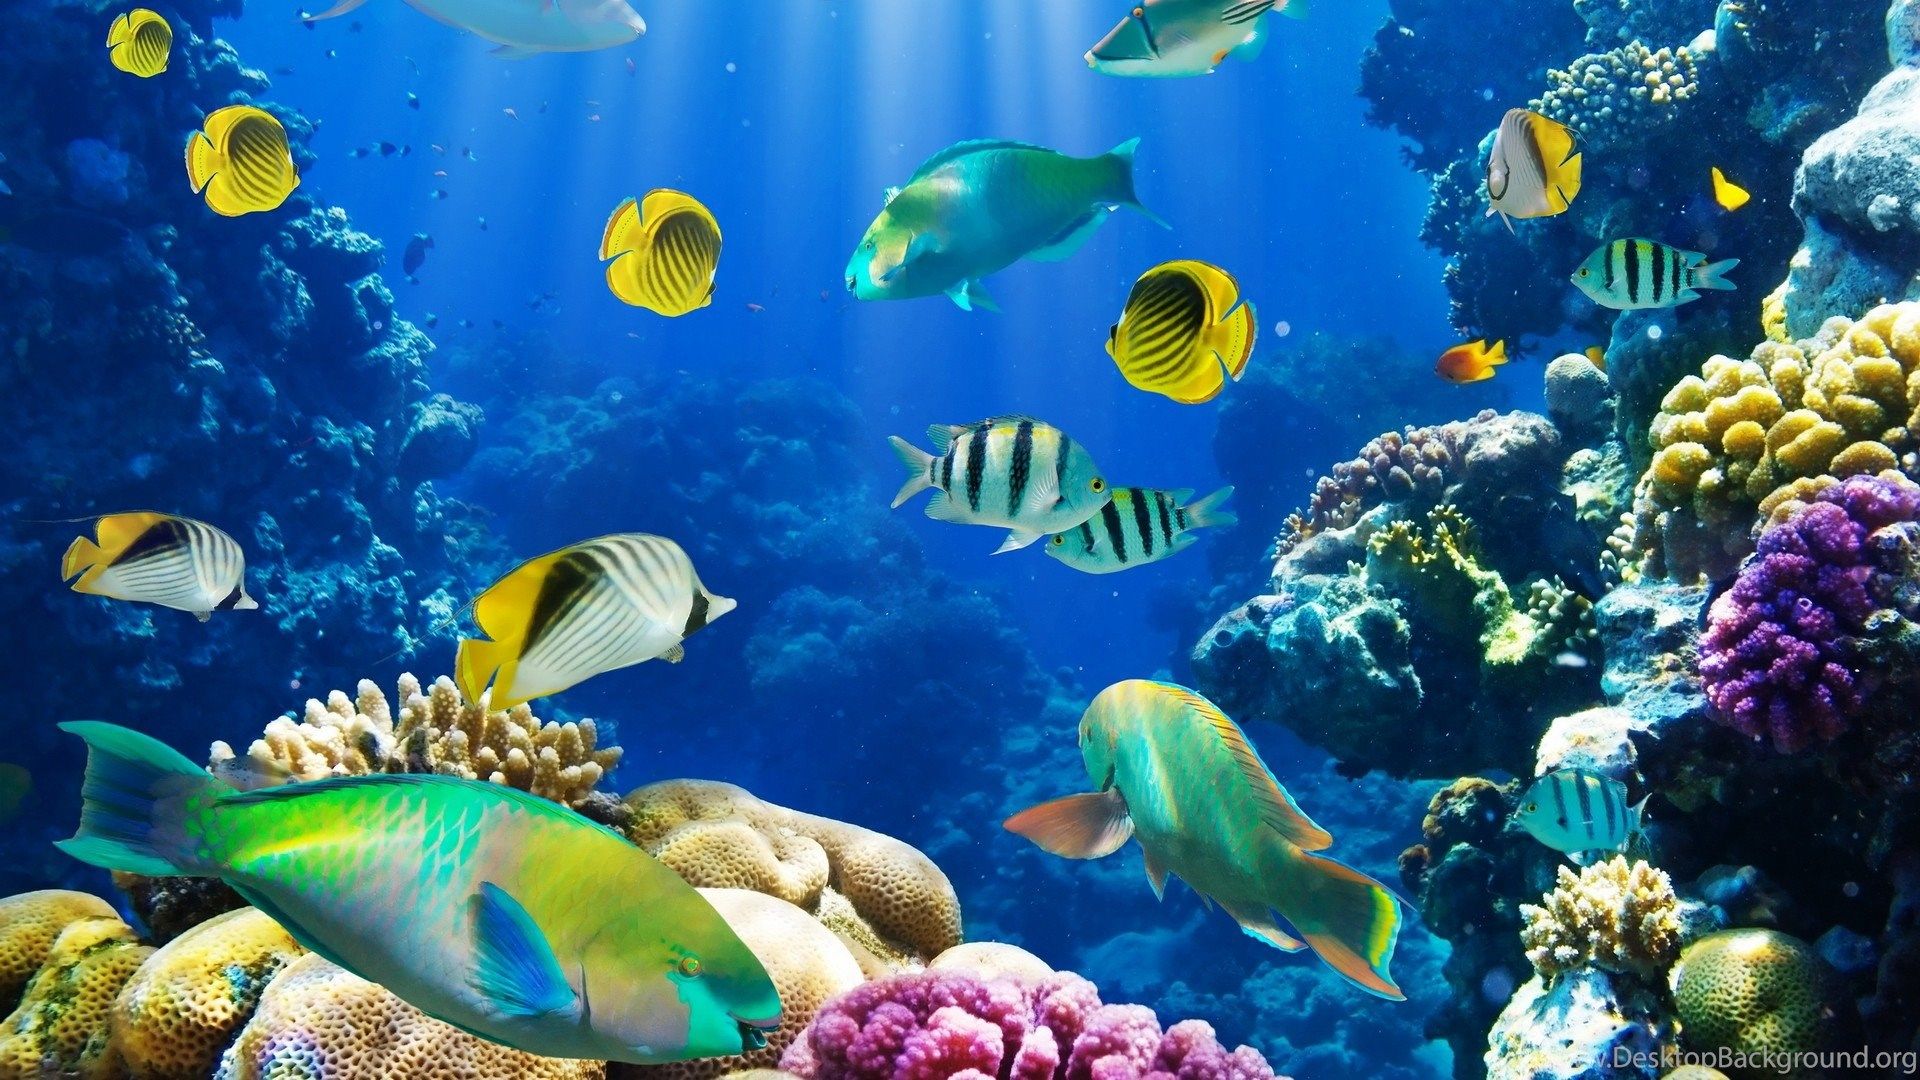 Aquarium Screensaver Mac Free Download - renewfloor